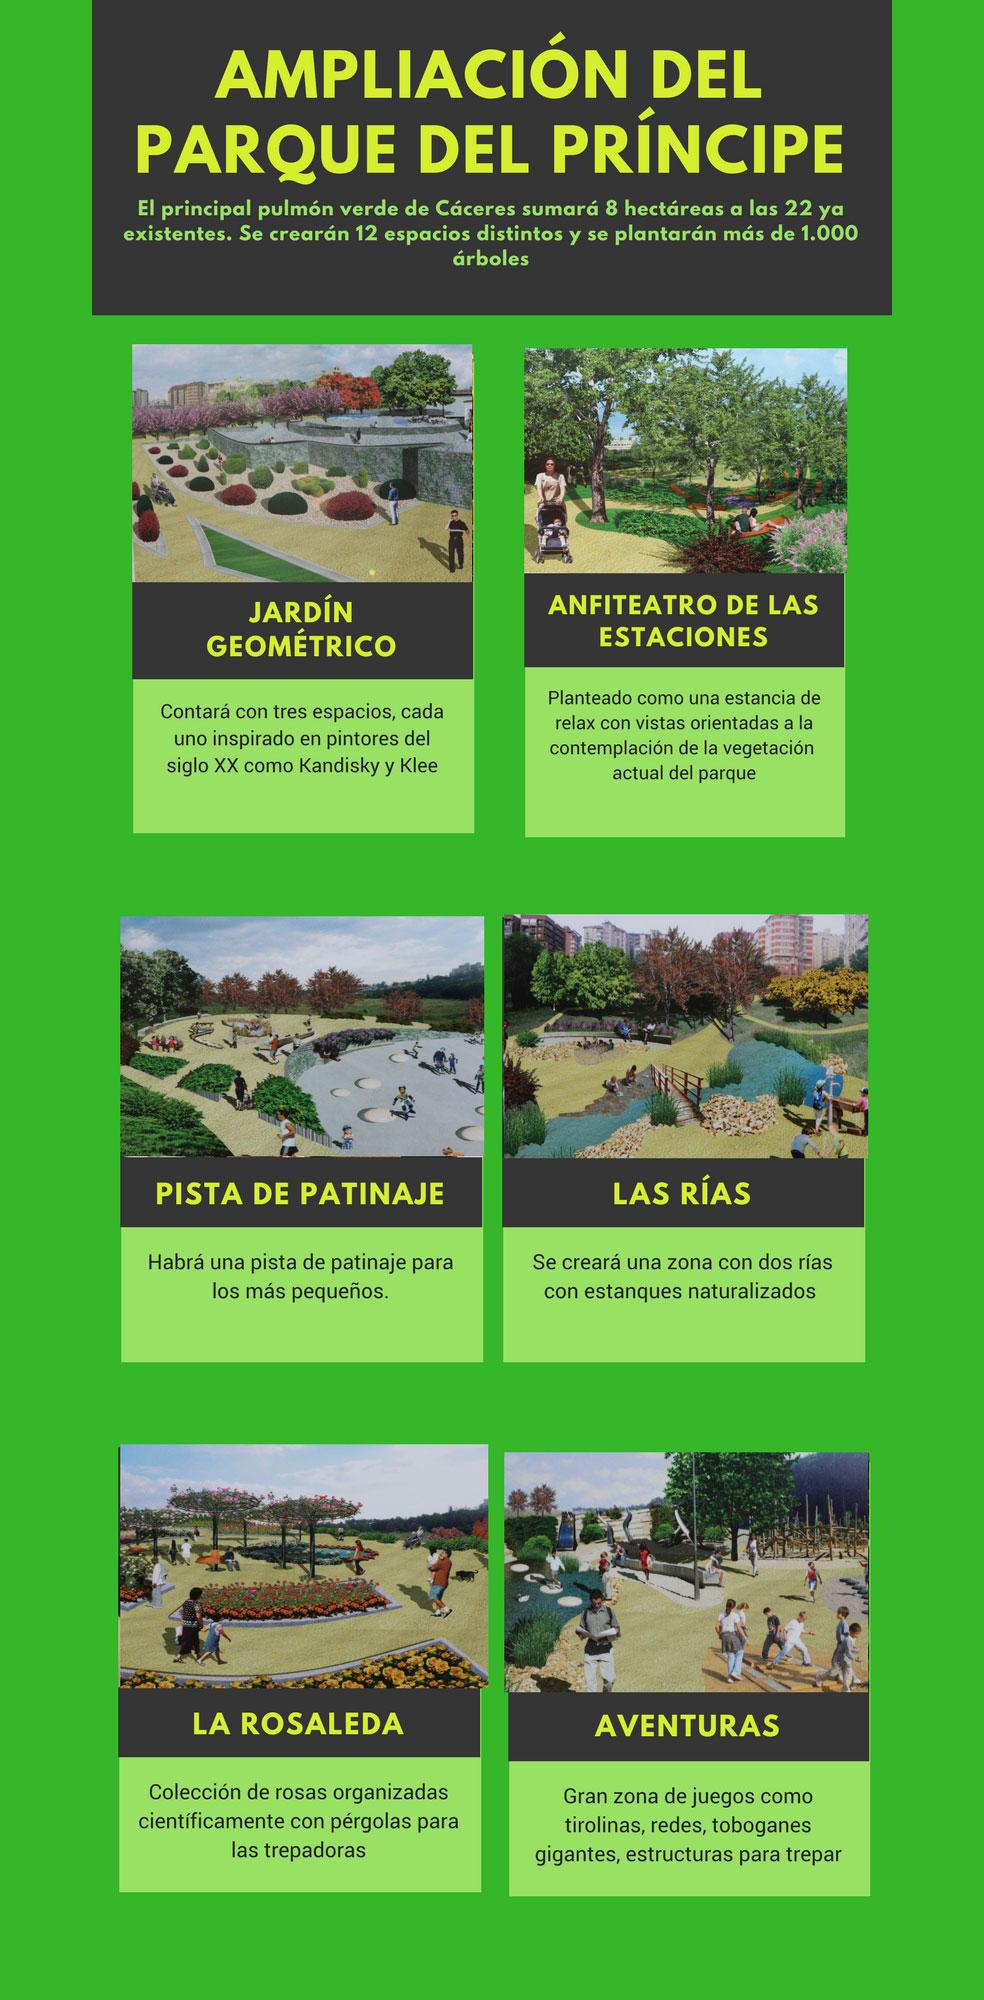 Fotos: Ampliación del Parque del Príncipe en Cáceres